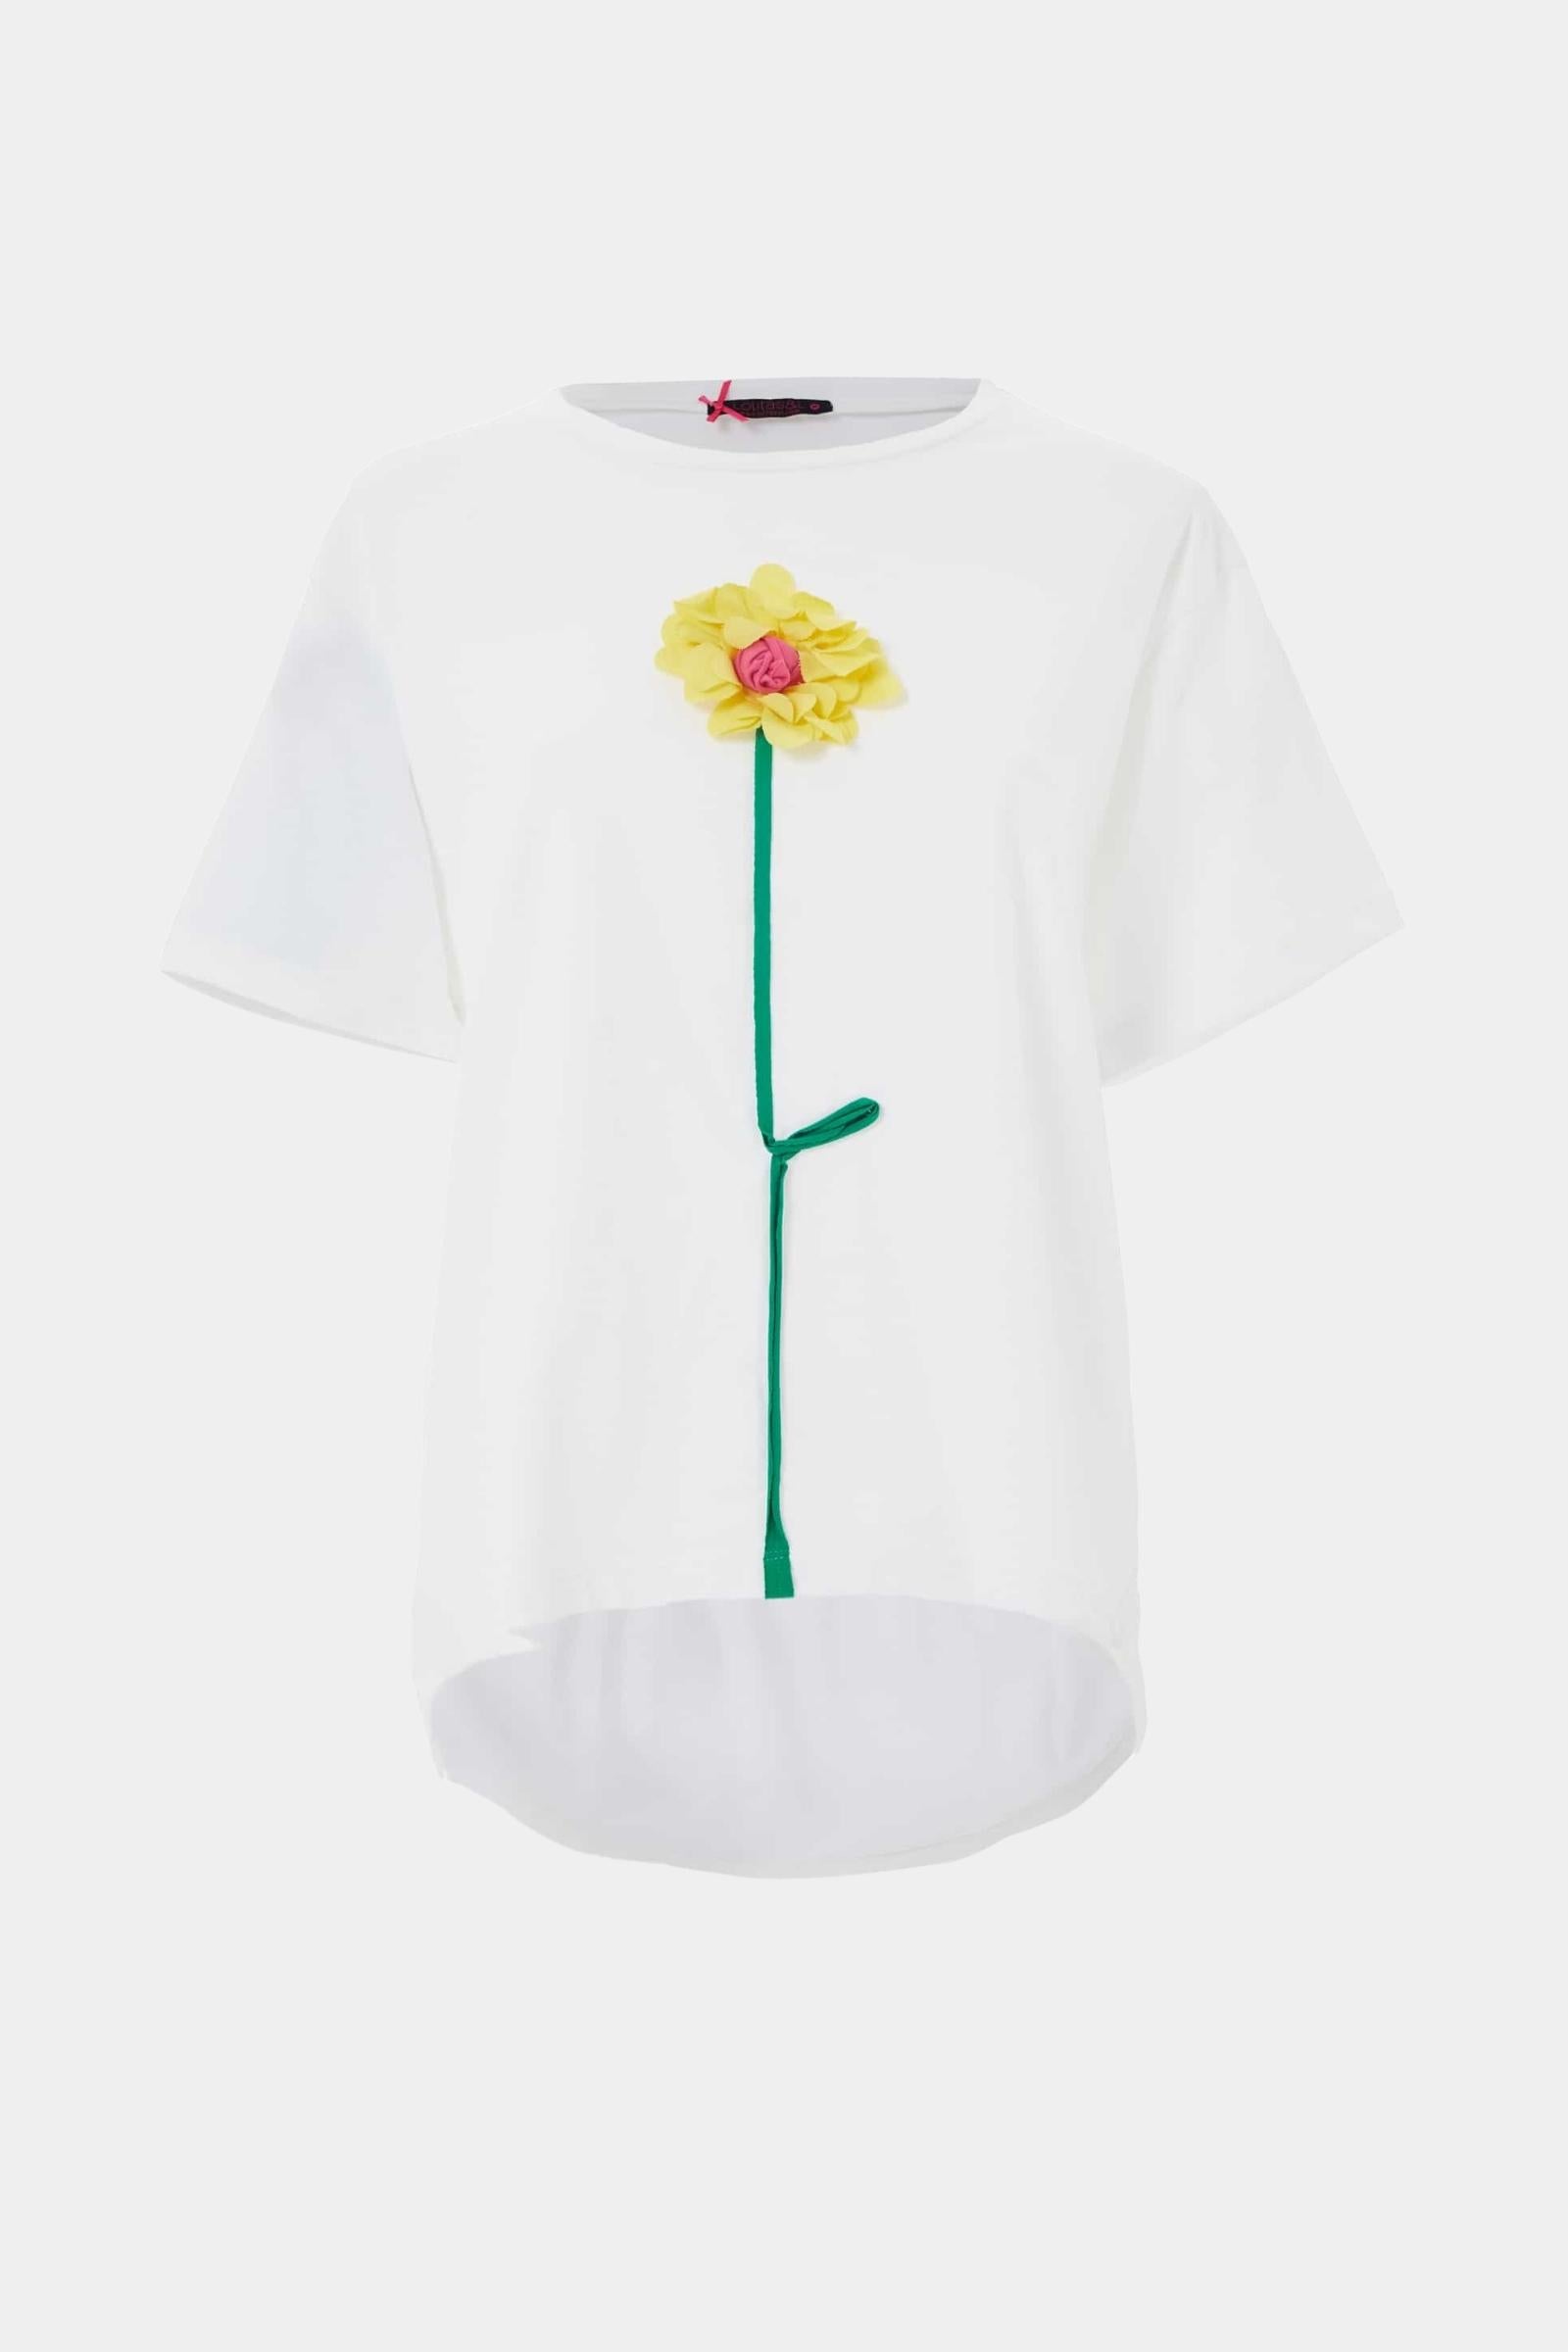 Camiseta blanca con flor bordada y abertura en espalda - lolitasyl.com